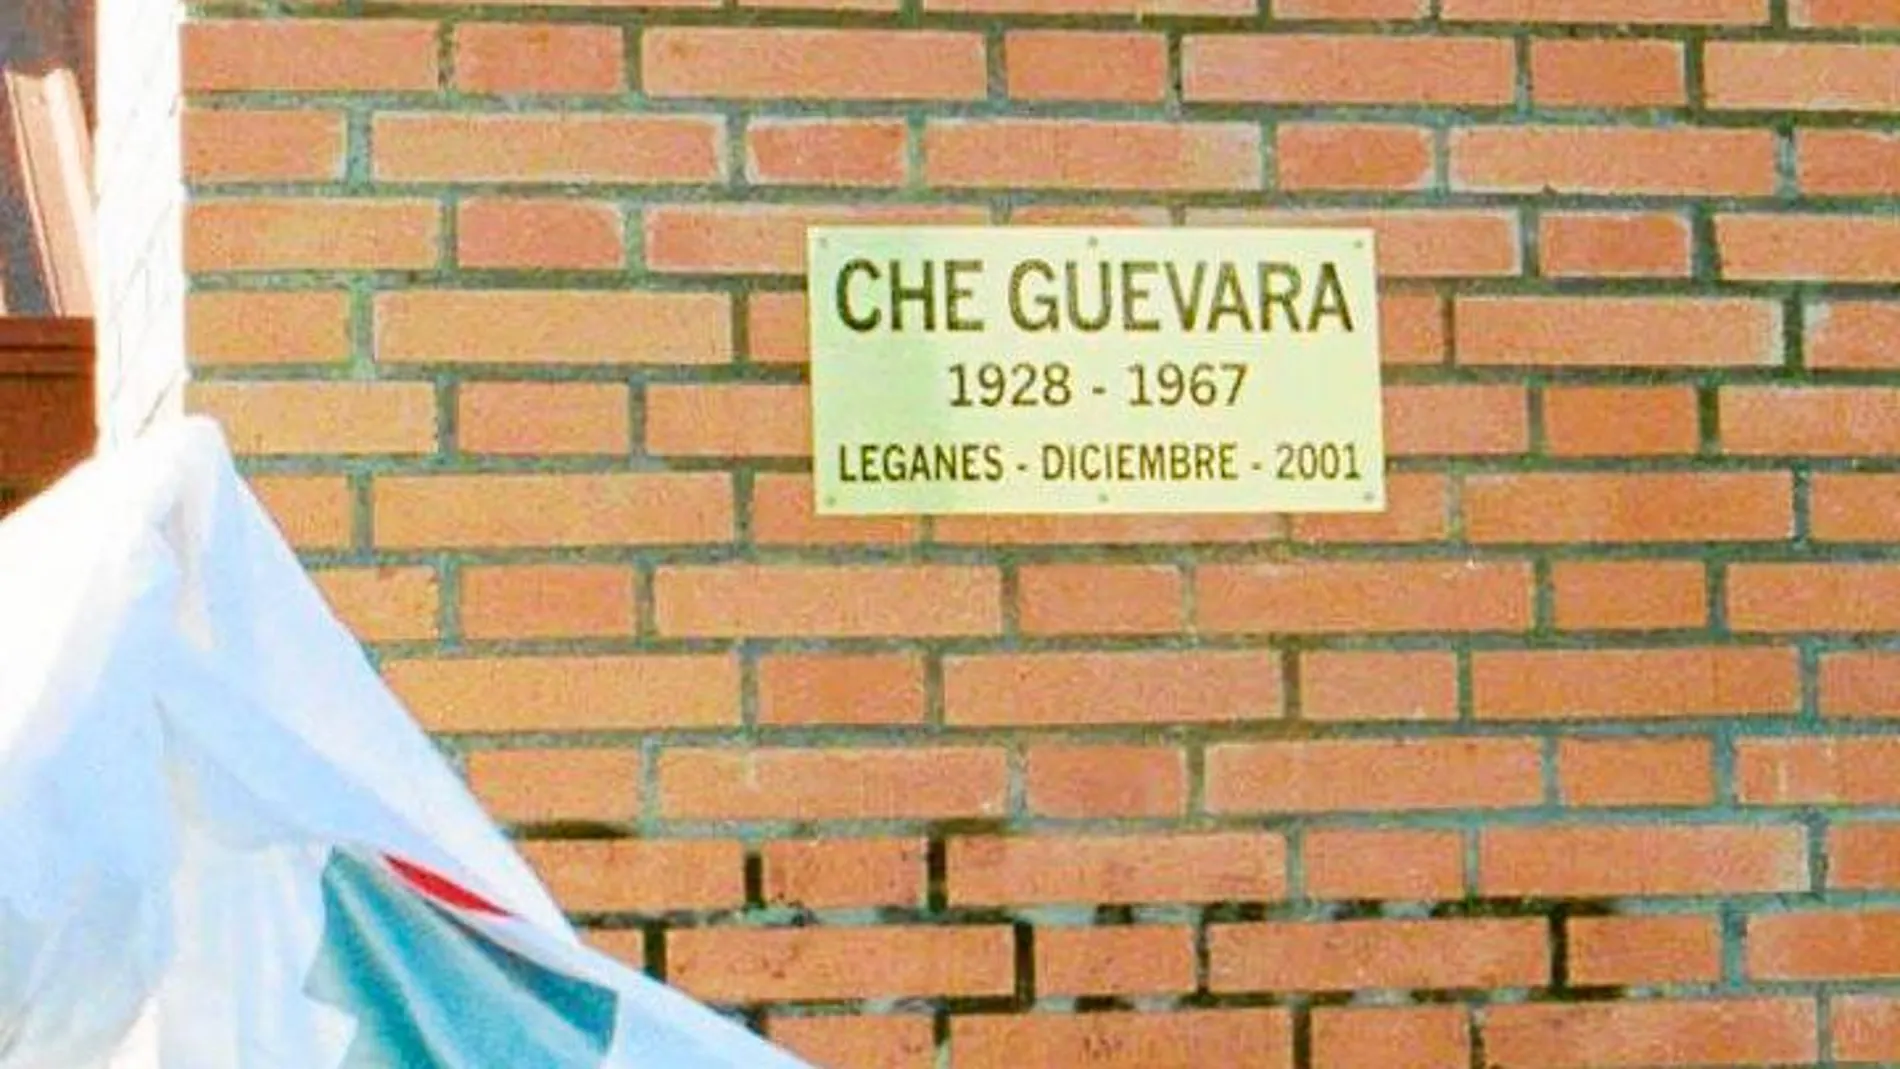 La estatua del Che Guevara fue colocada en el año 2001 / Foto: Connie G. Santos